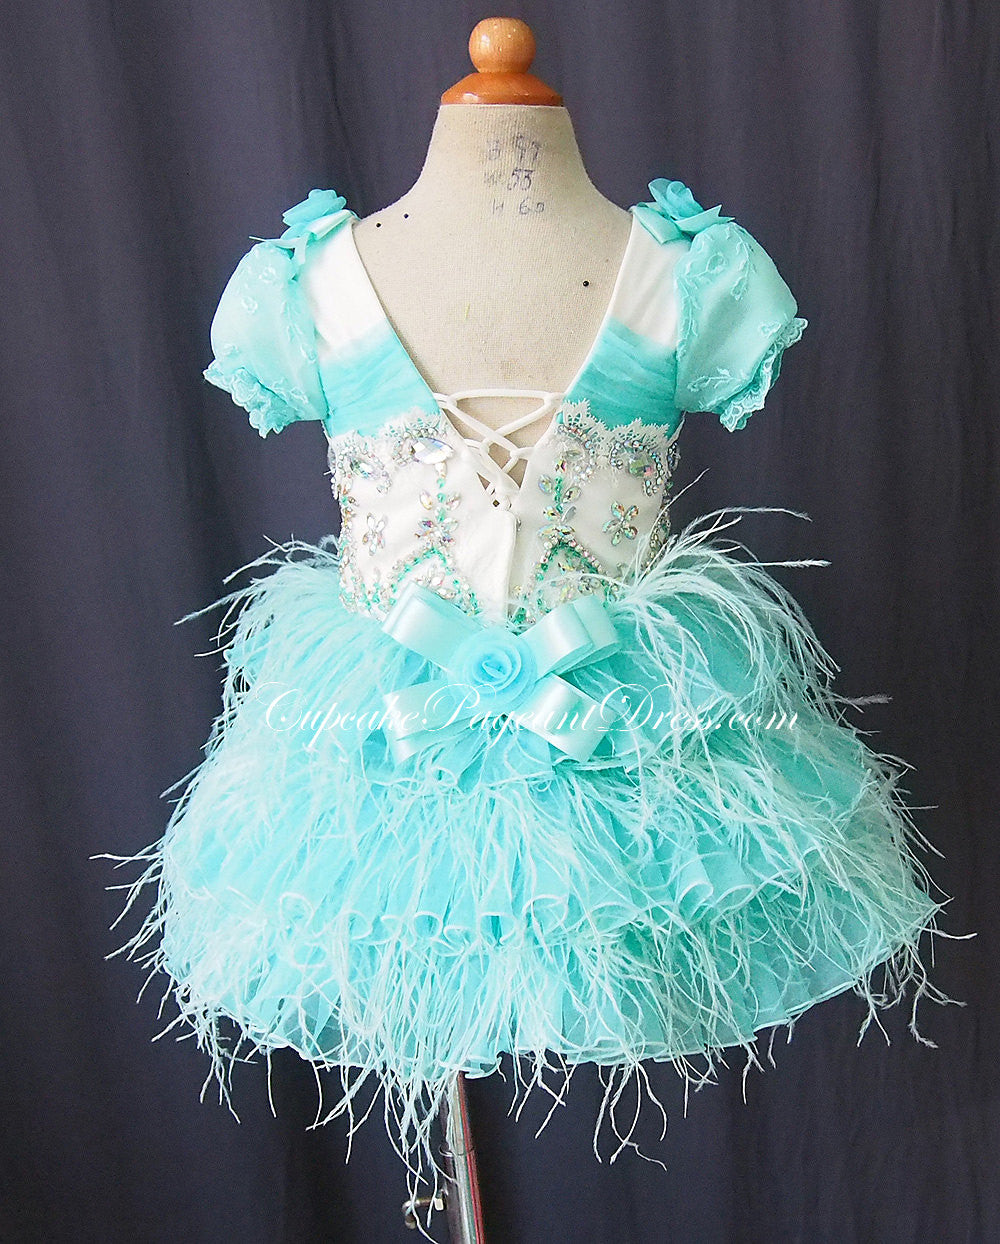 Custom Made Feather Little Girls/Newborn/Kids Pageant Dress - CupcakePageantDress